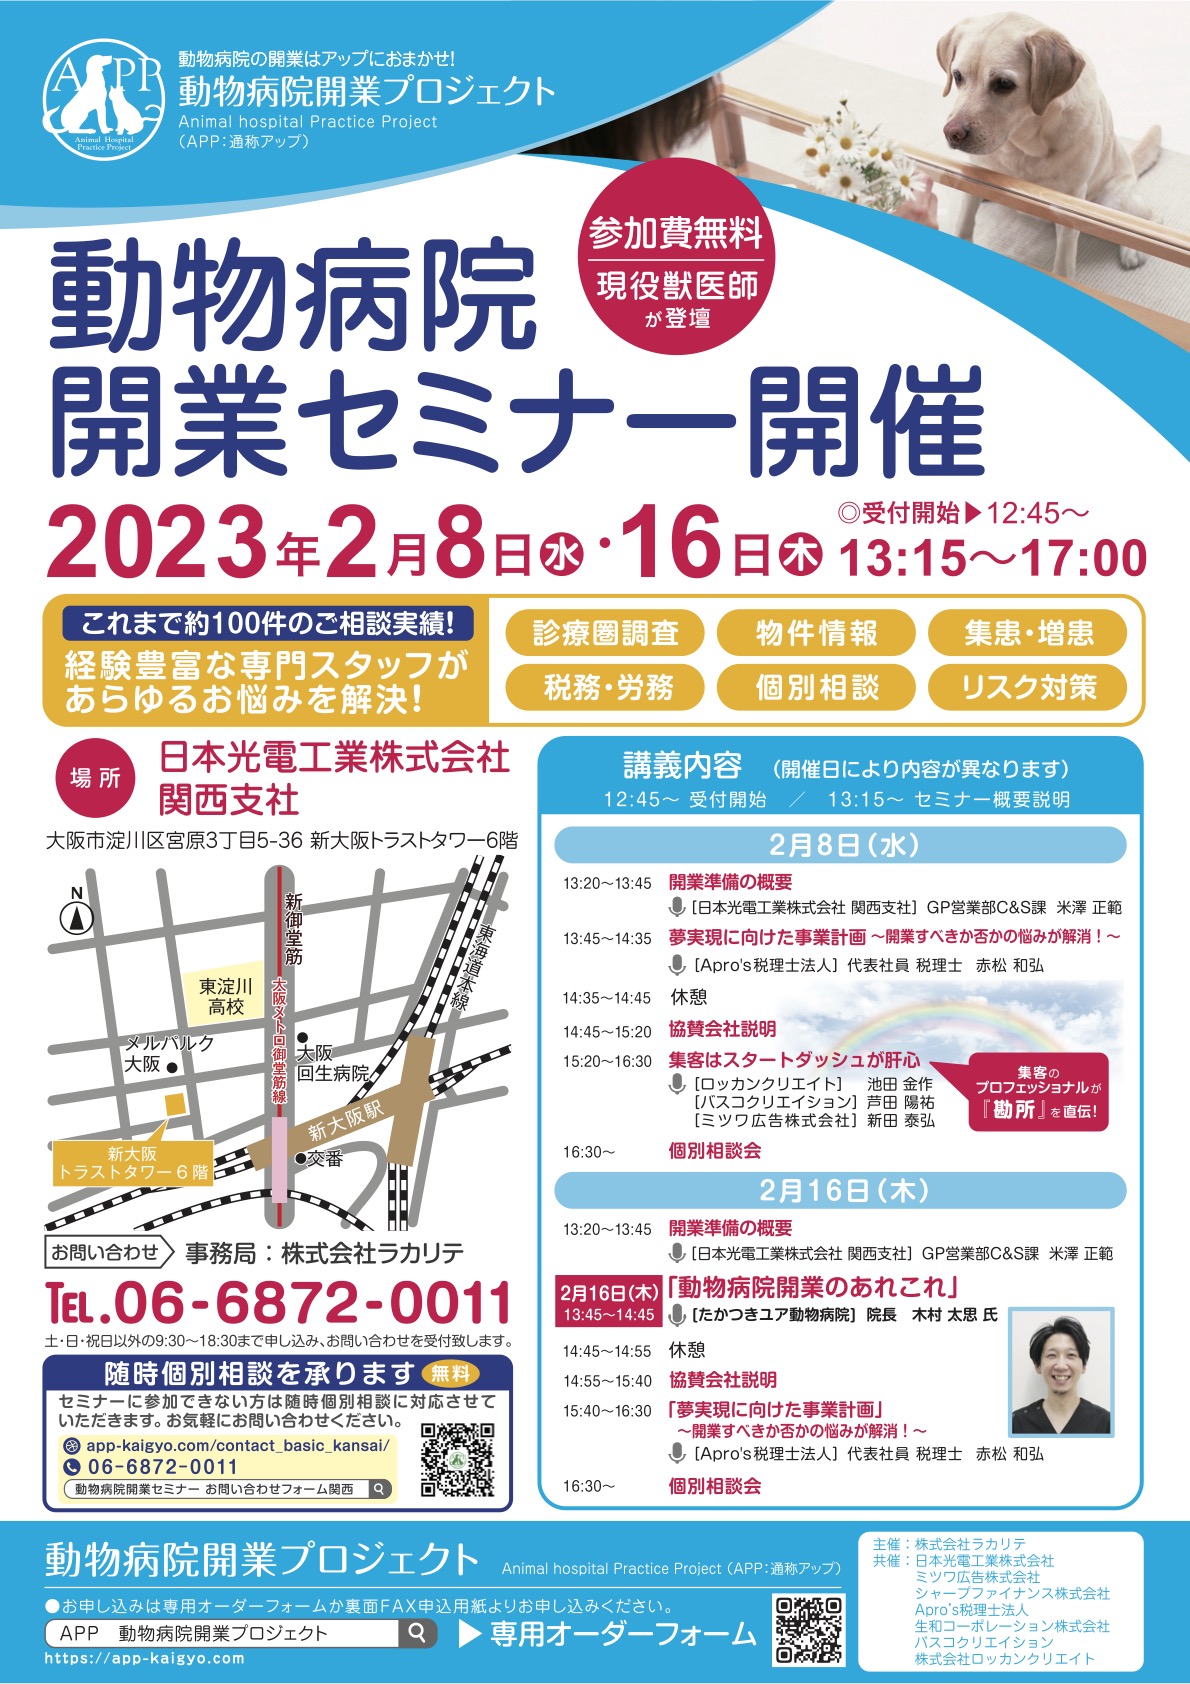 『【大阪開催】動物病院開業セミナー開催（2023年2月8日・16日）のお知らせ』のチラシ画像